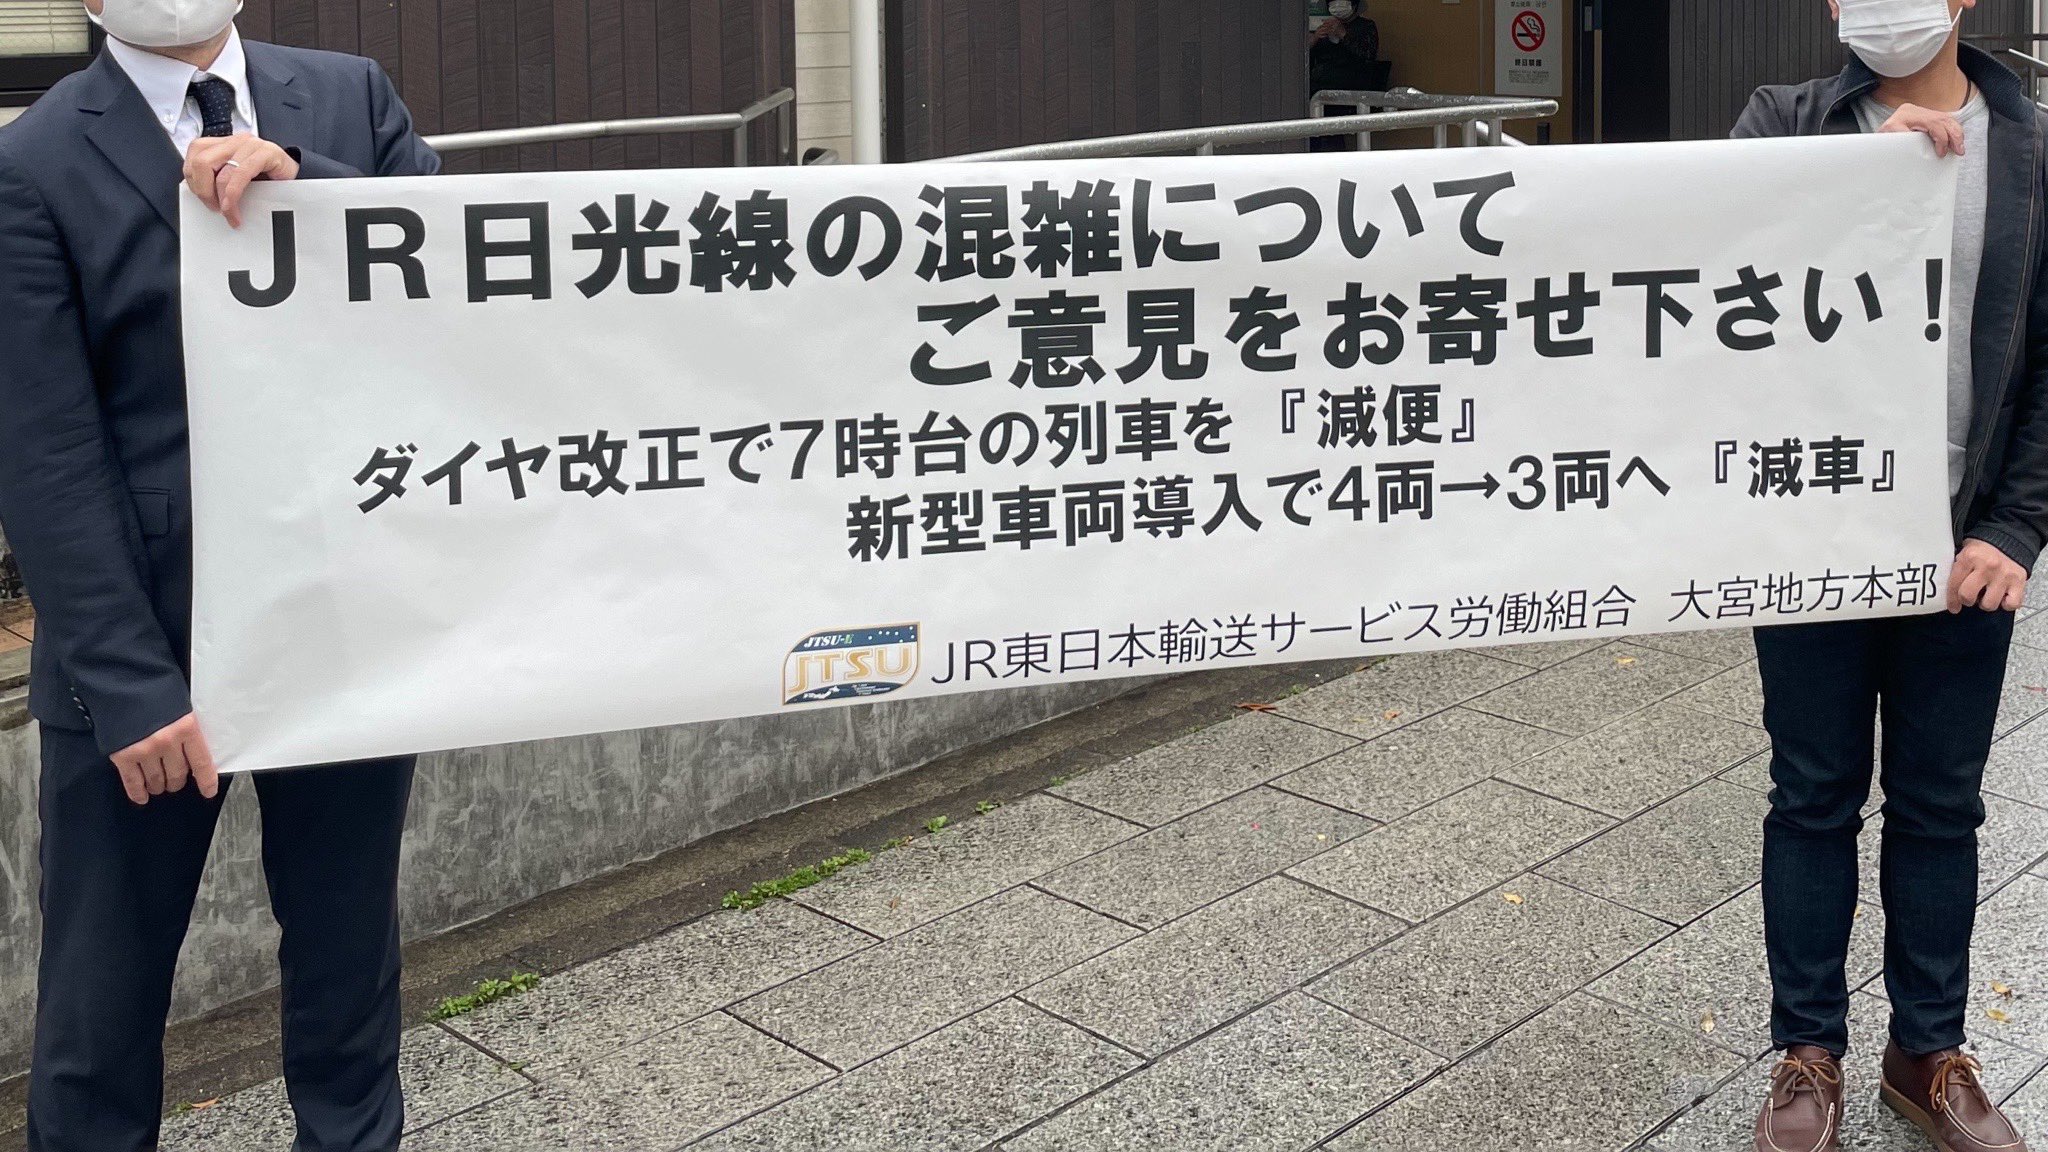 【悲報】JR東日本、無能本社に代わり組合が調査 日光線混雑の実態を調べるために現業が自主的に駅前チラシ配布